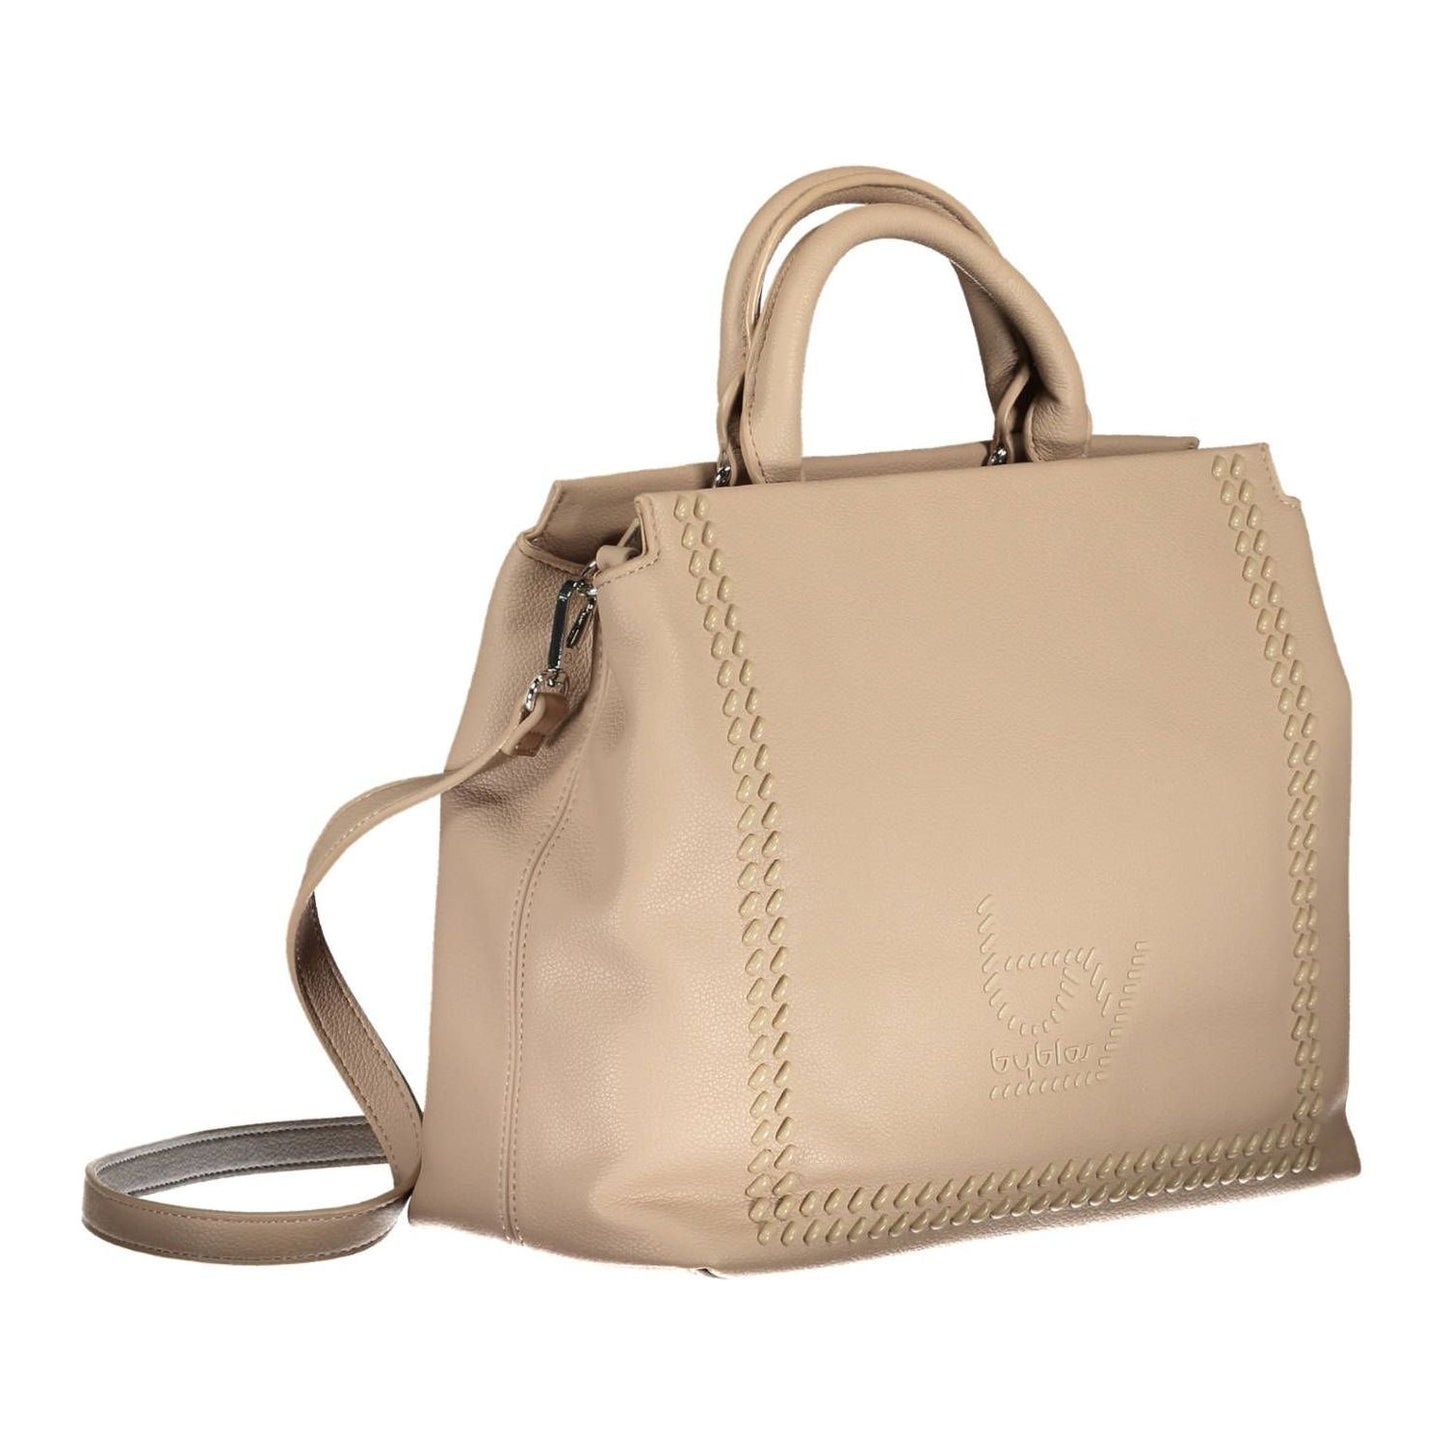 BYBLOS | Beige Elegance Dual Compartment Handbag| McRichard Designer Brands   